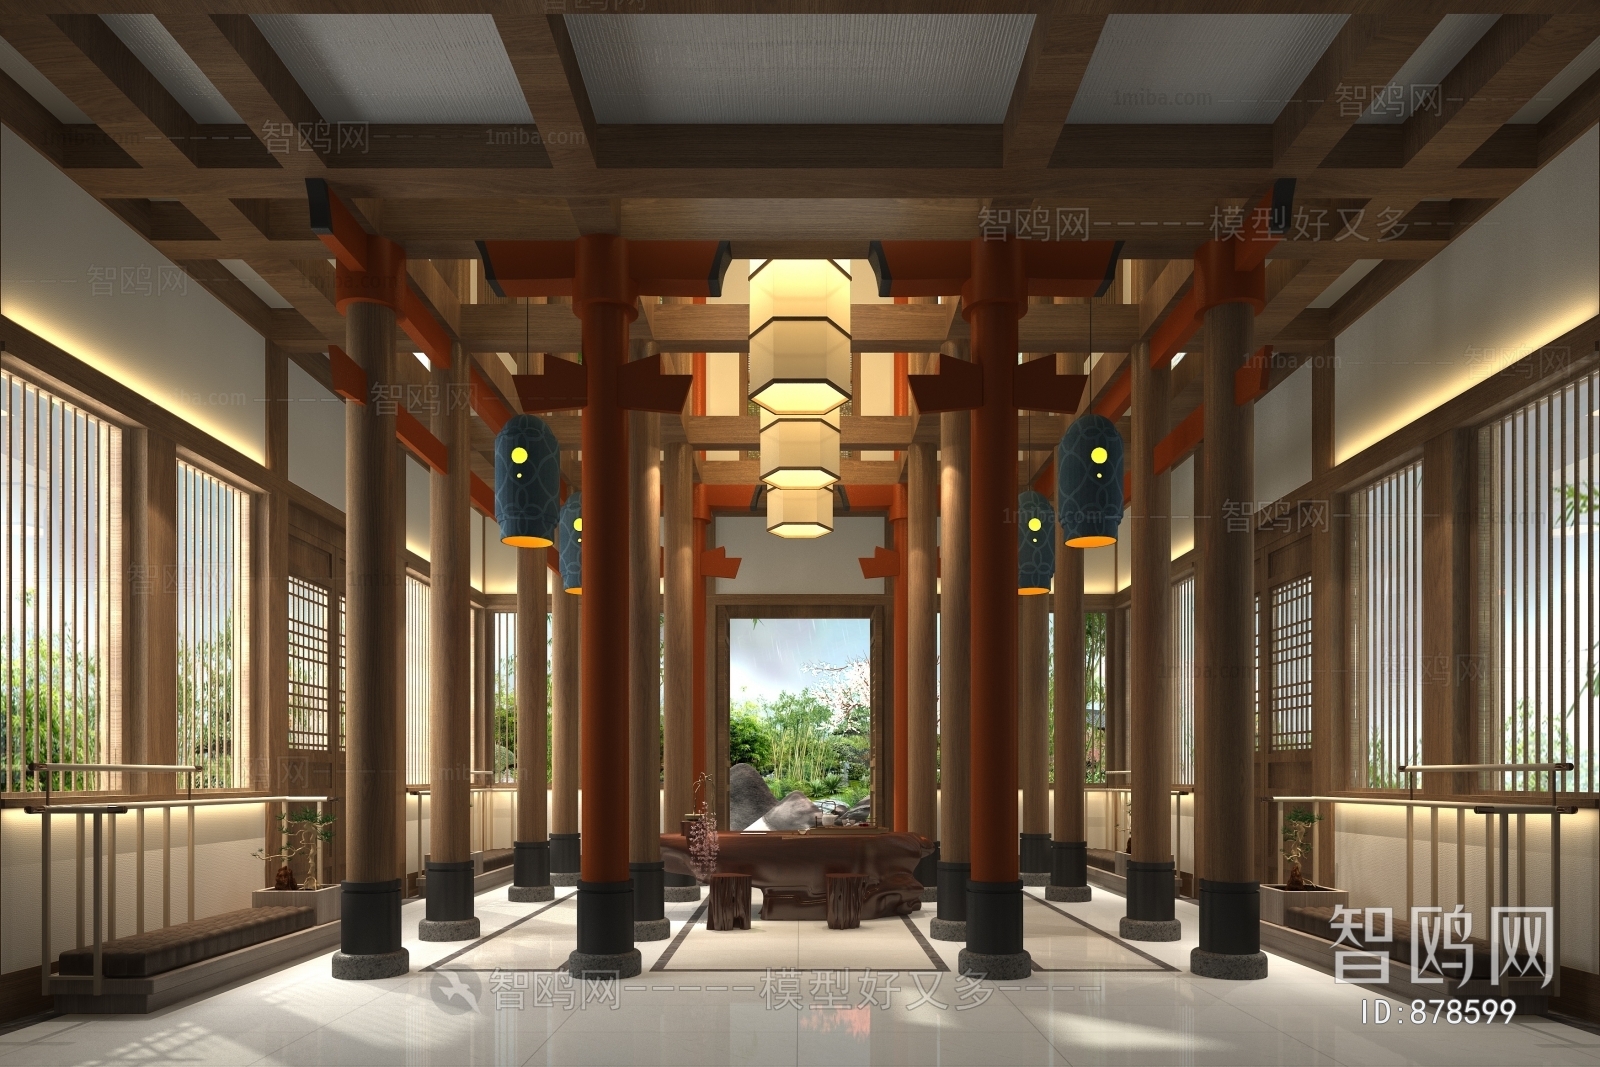 Japanese Style Lobby Hall